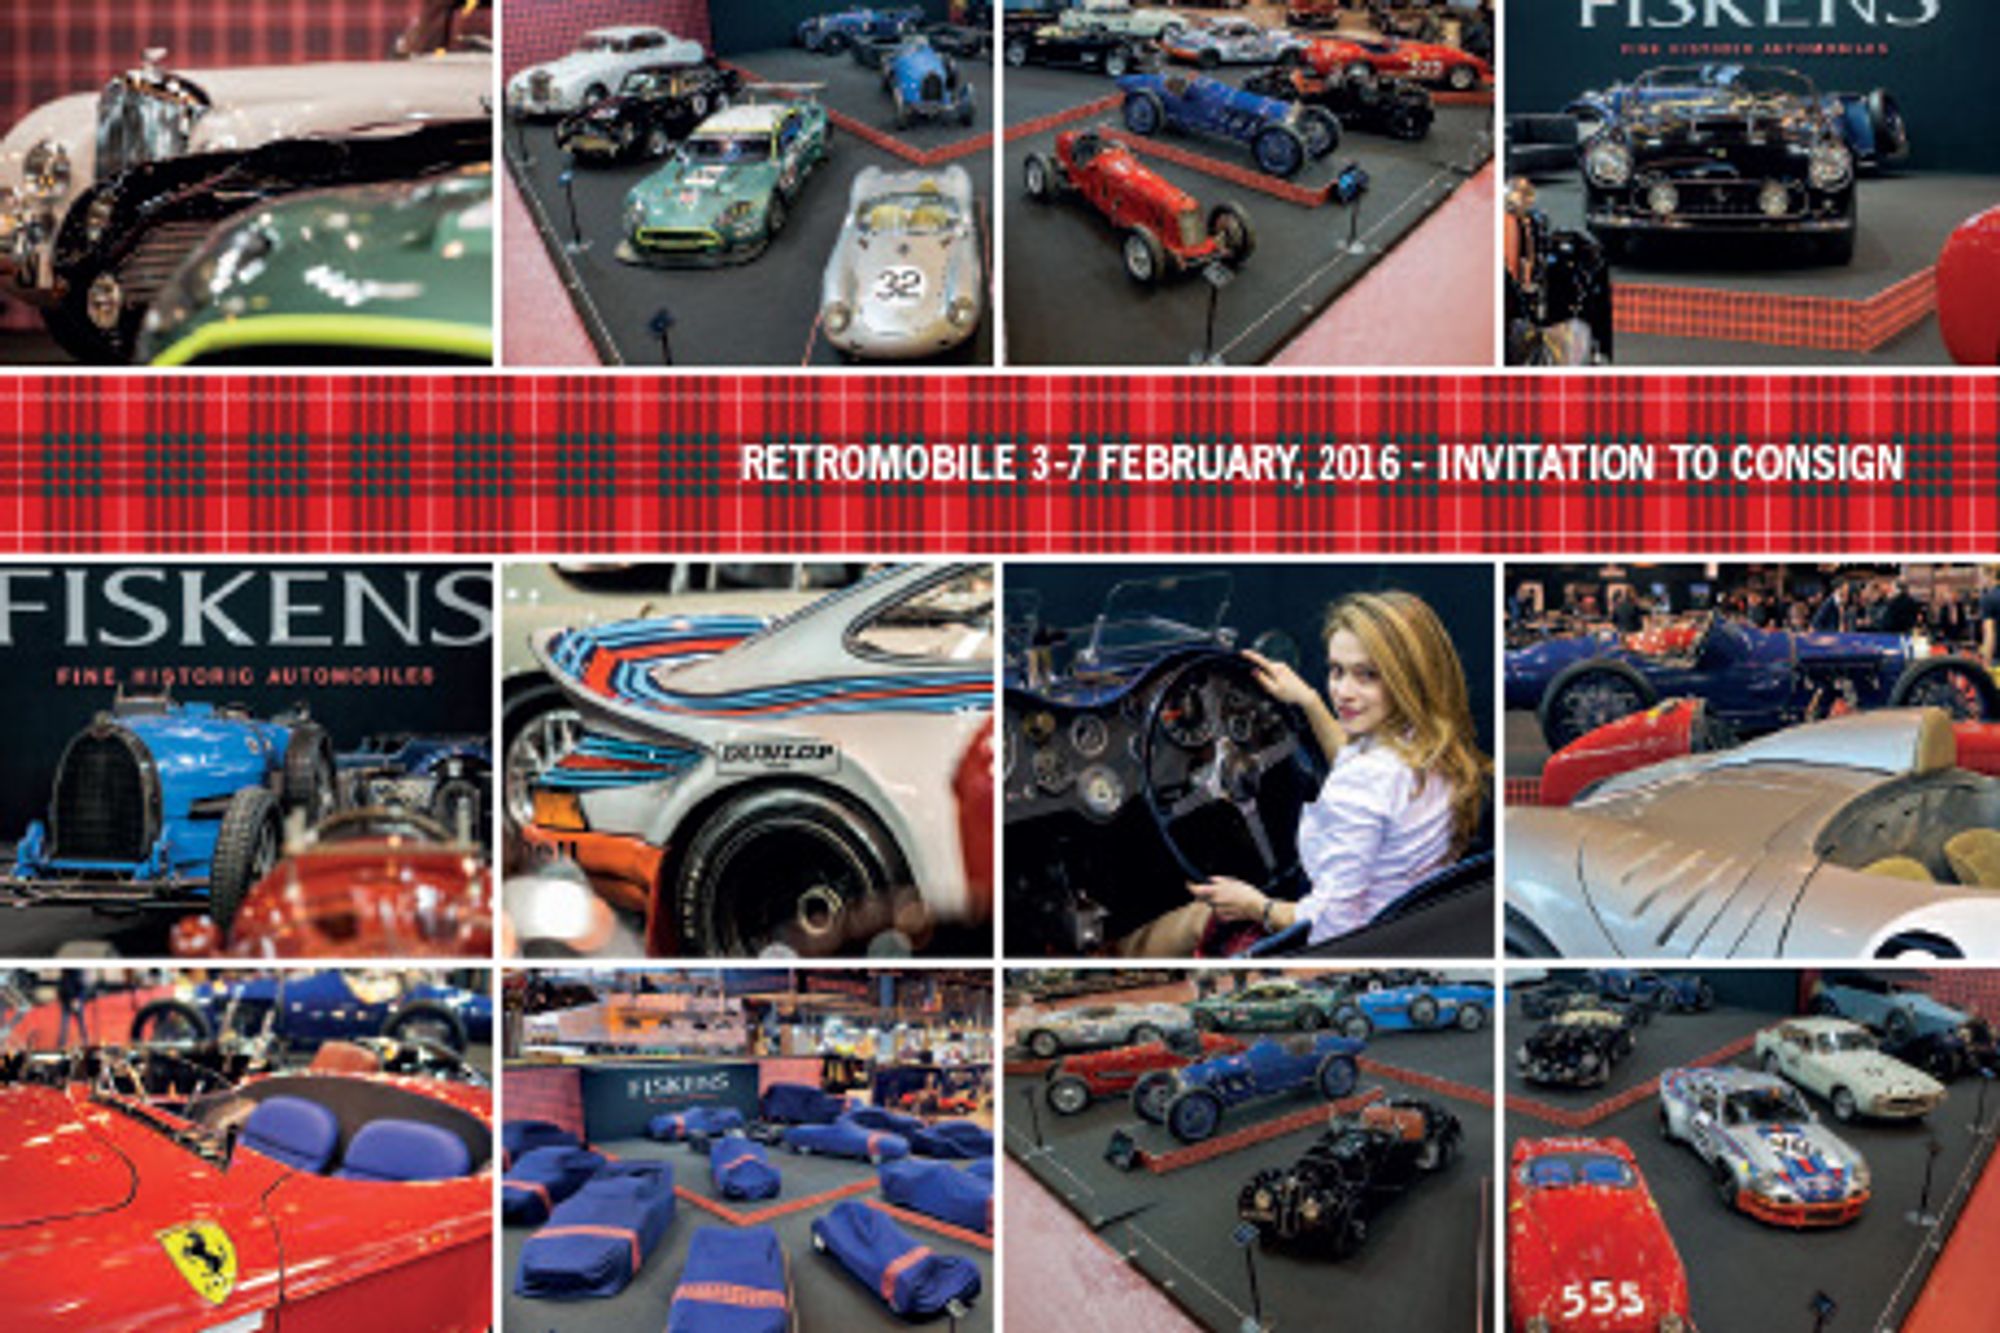 Retromobile 3-7 February, 2016 Invitation to Consign